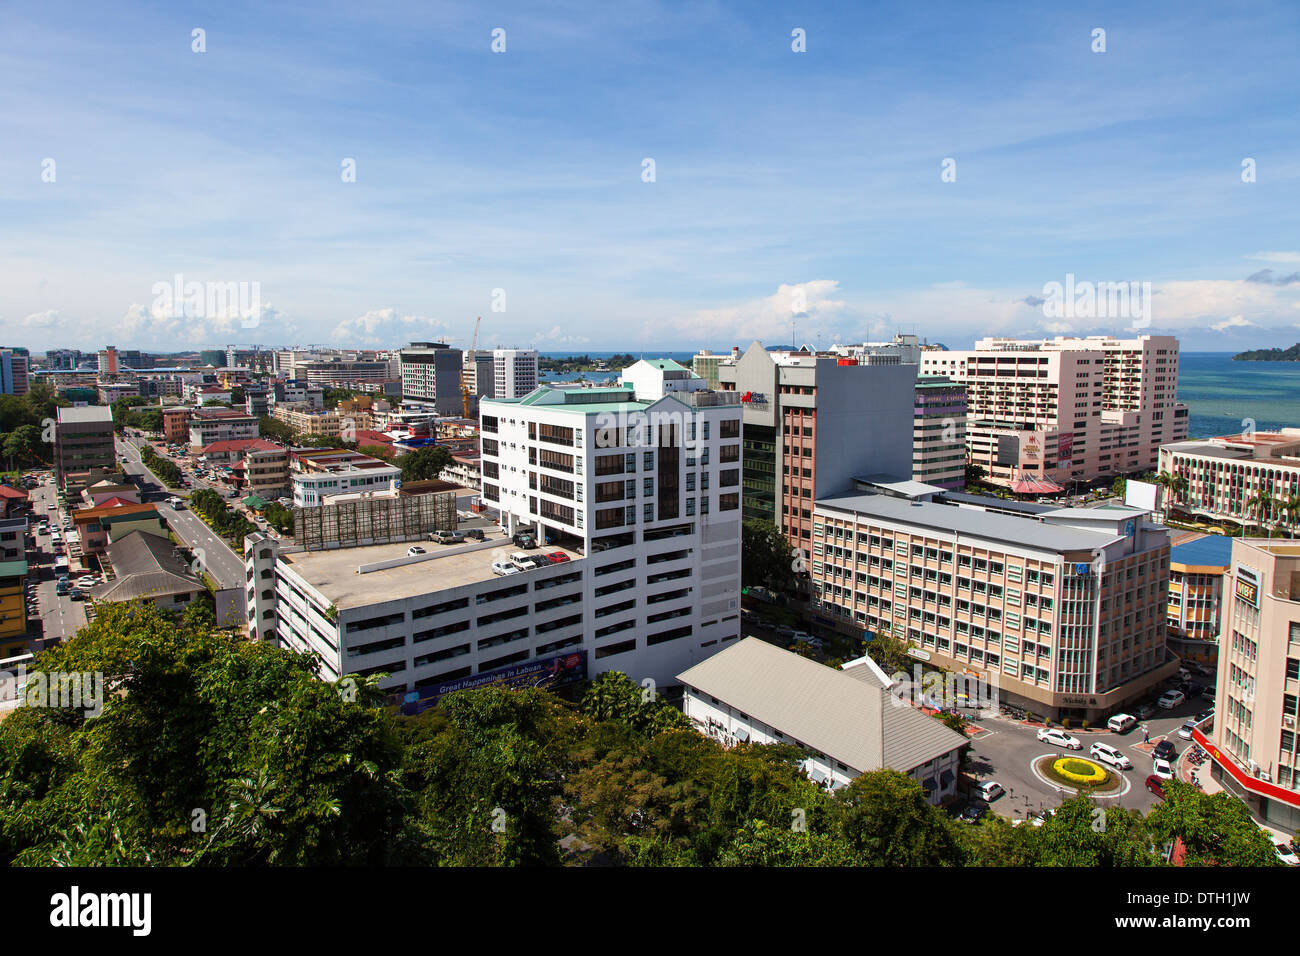 Kota Kinabalu, Sabah, Malaysia Stock Photo